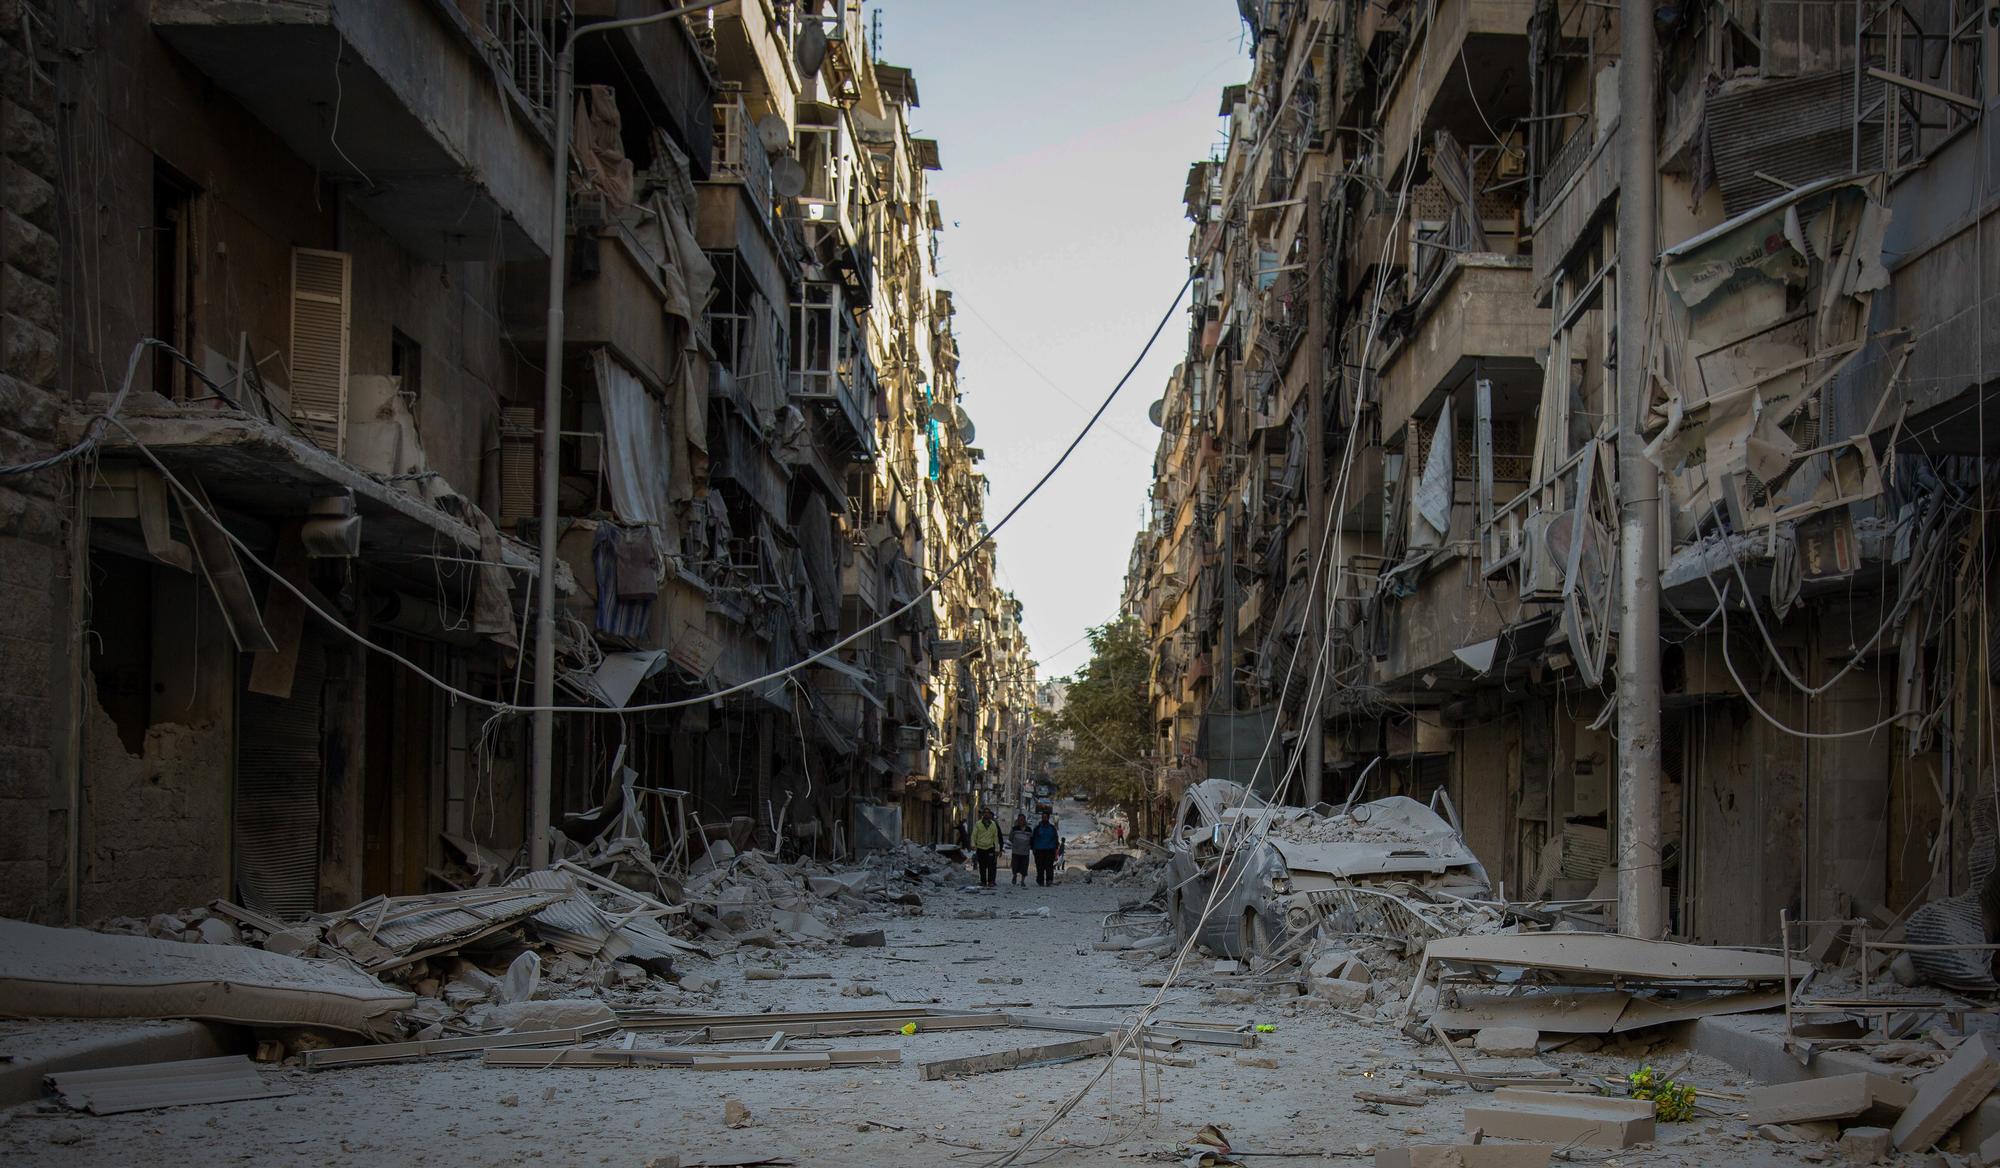 hrw-denuncia-bombardeos-deliberados-contra-civiles-en-siria-huffpost